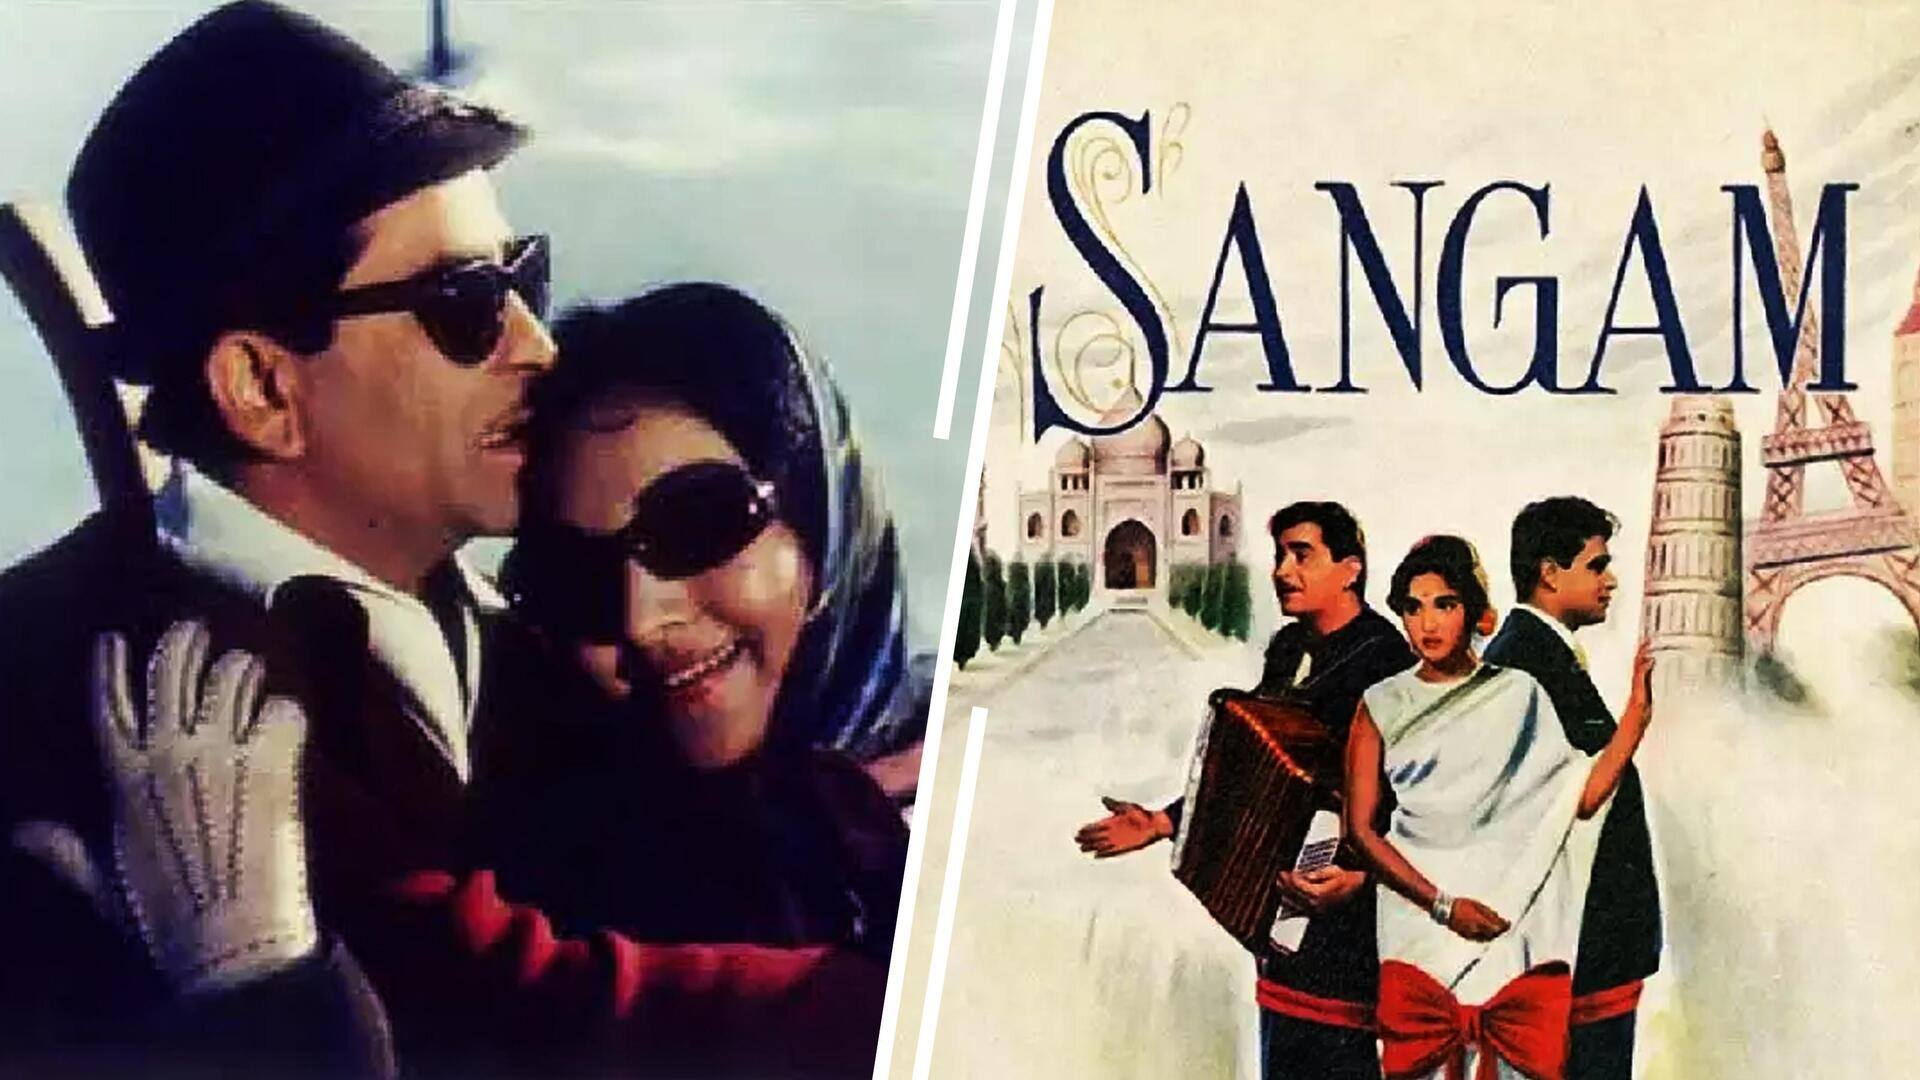 #NewsBytesExplainer: भारतीय सिनेमा की विदेश में शूट हुई पहली फिल्म थी 'संगम', जानिए क्या थीं चुनौतियां